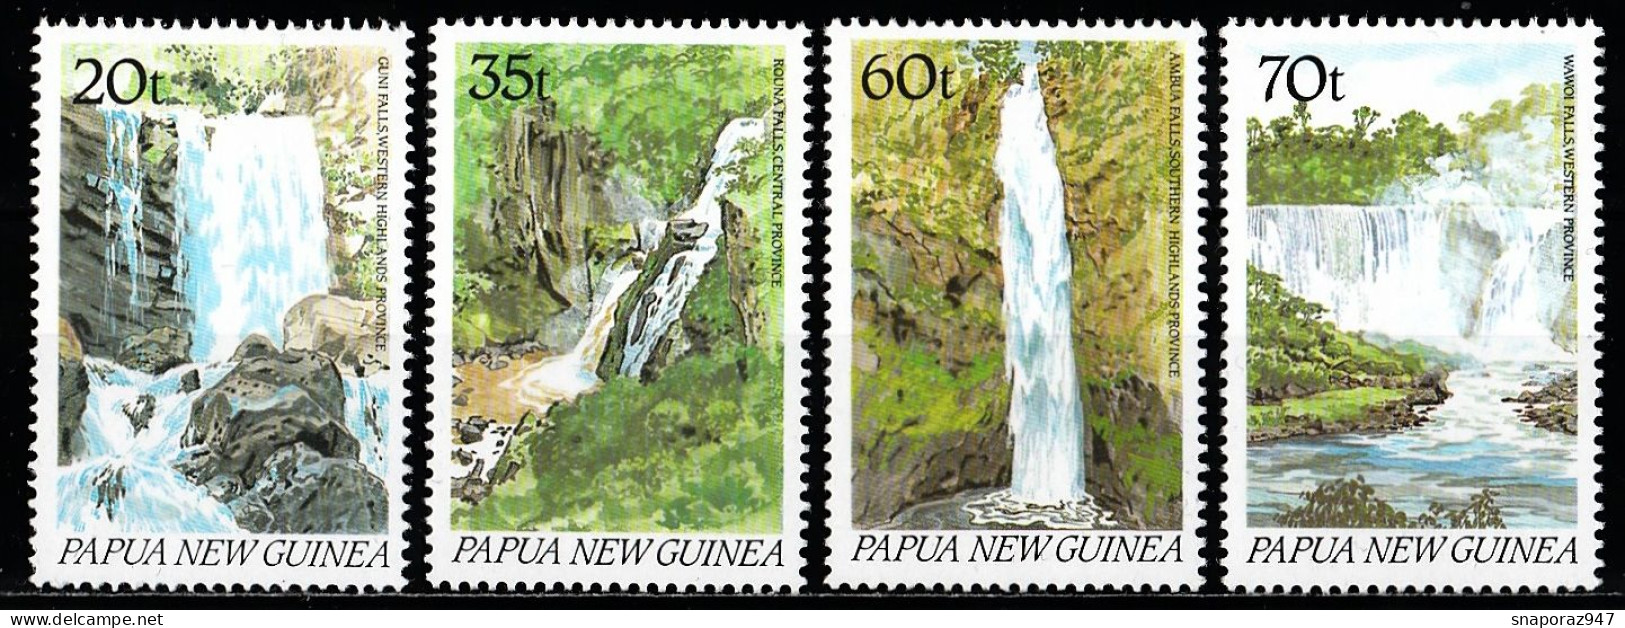 1990 Papua New Guinea Waterfalls Guni,Rouna,Ambua,Wawoi Set MNH** Tr129 - Geography